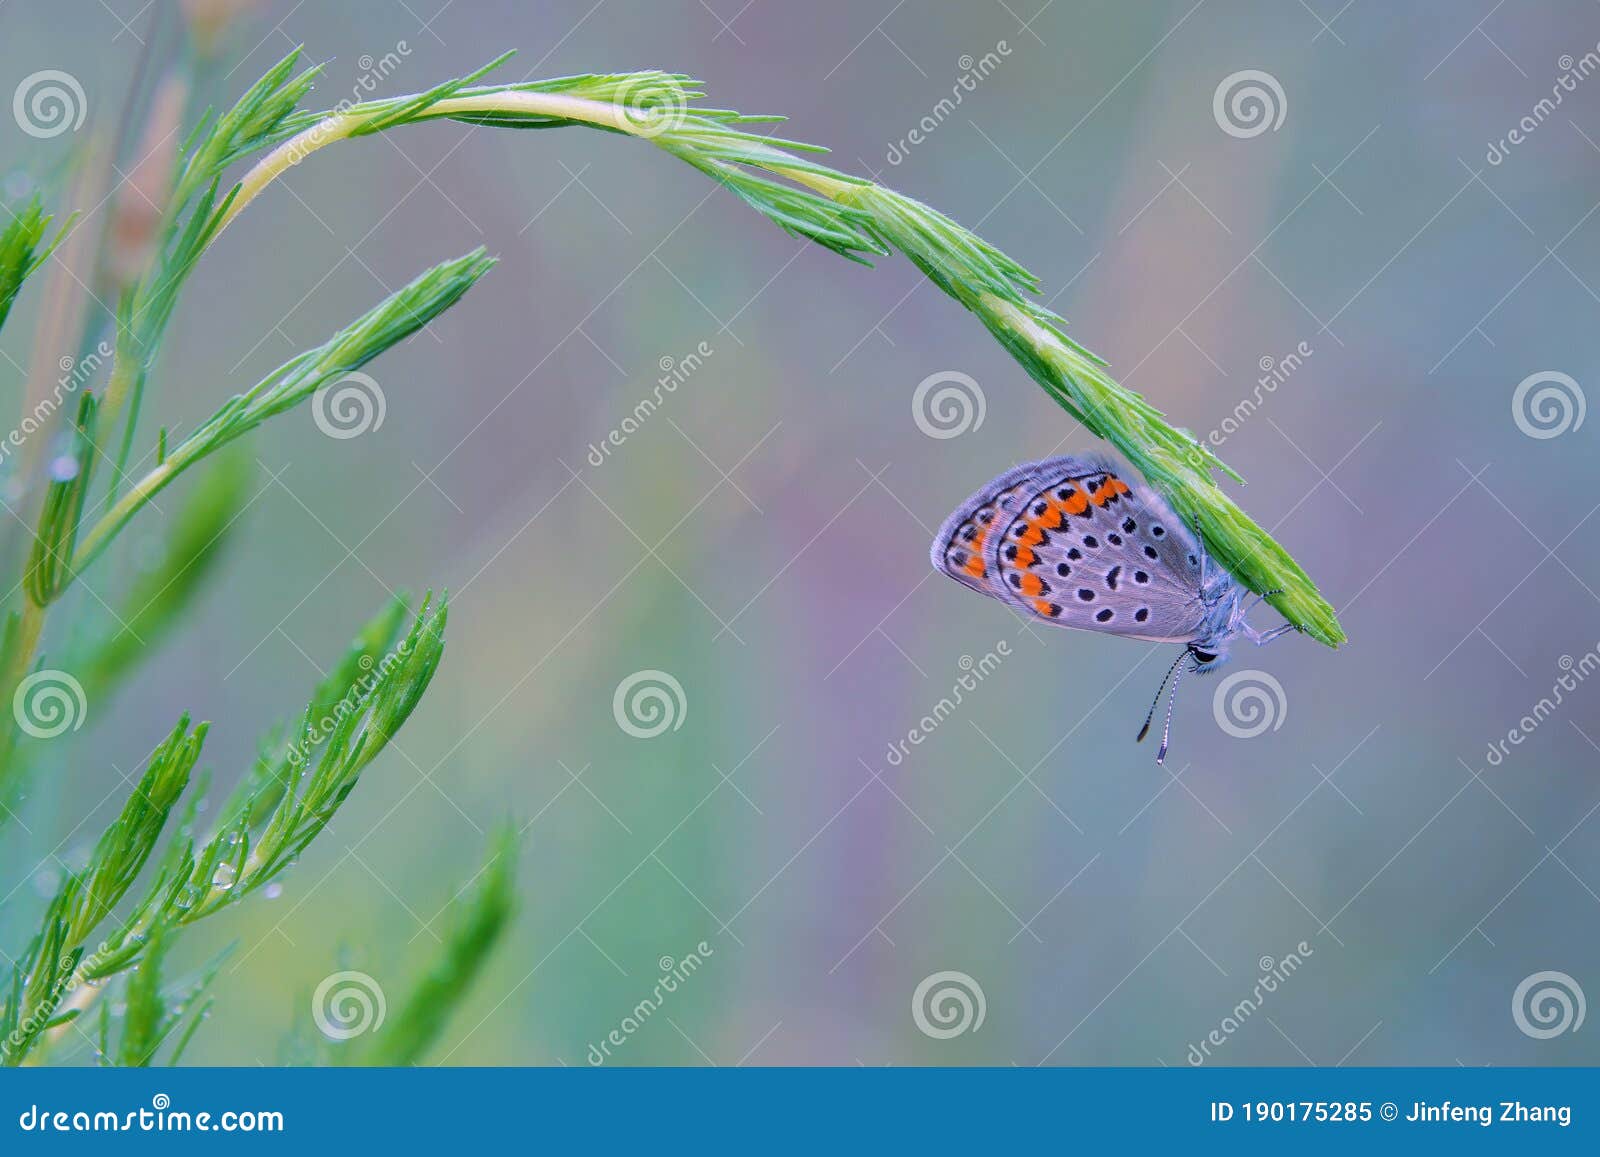 lycaenidae butterfly